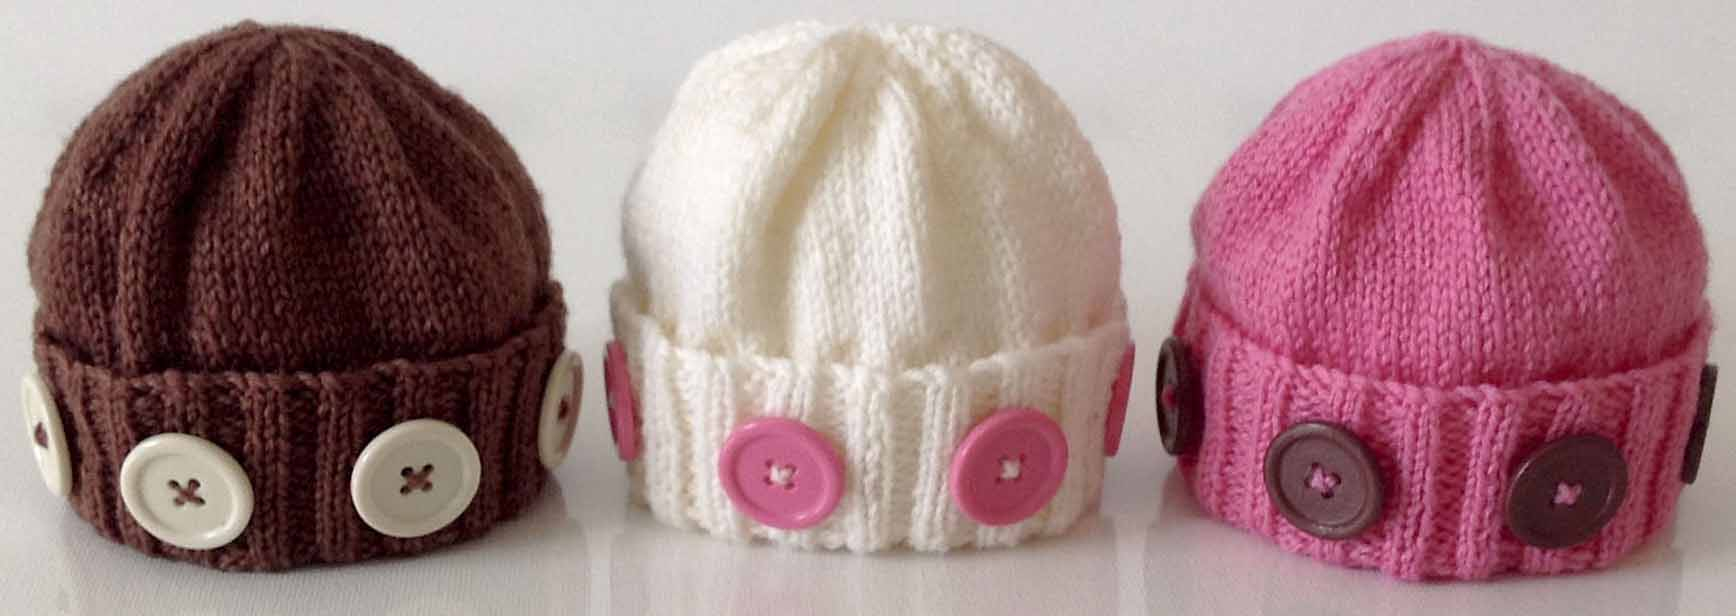 Newborn Knit Hat Pattern Free Free Premature Ba Hats Knitting Patterns